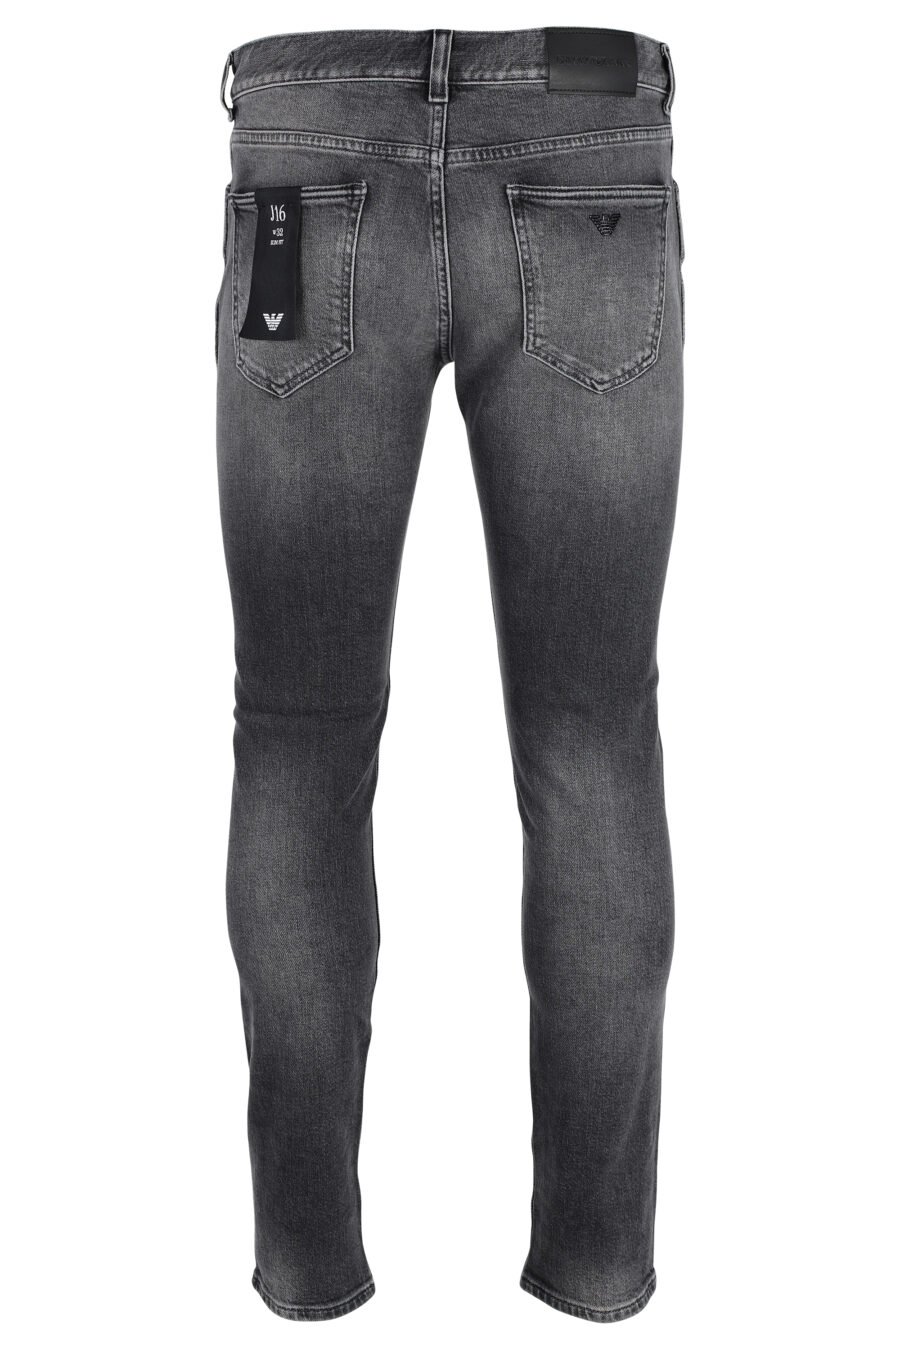 Ausgebleichte graue Jeans mit Adler-Logo - IMG 4824